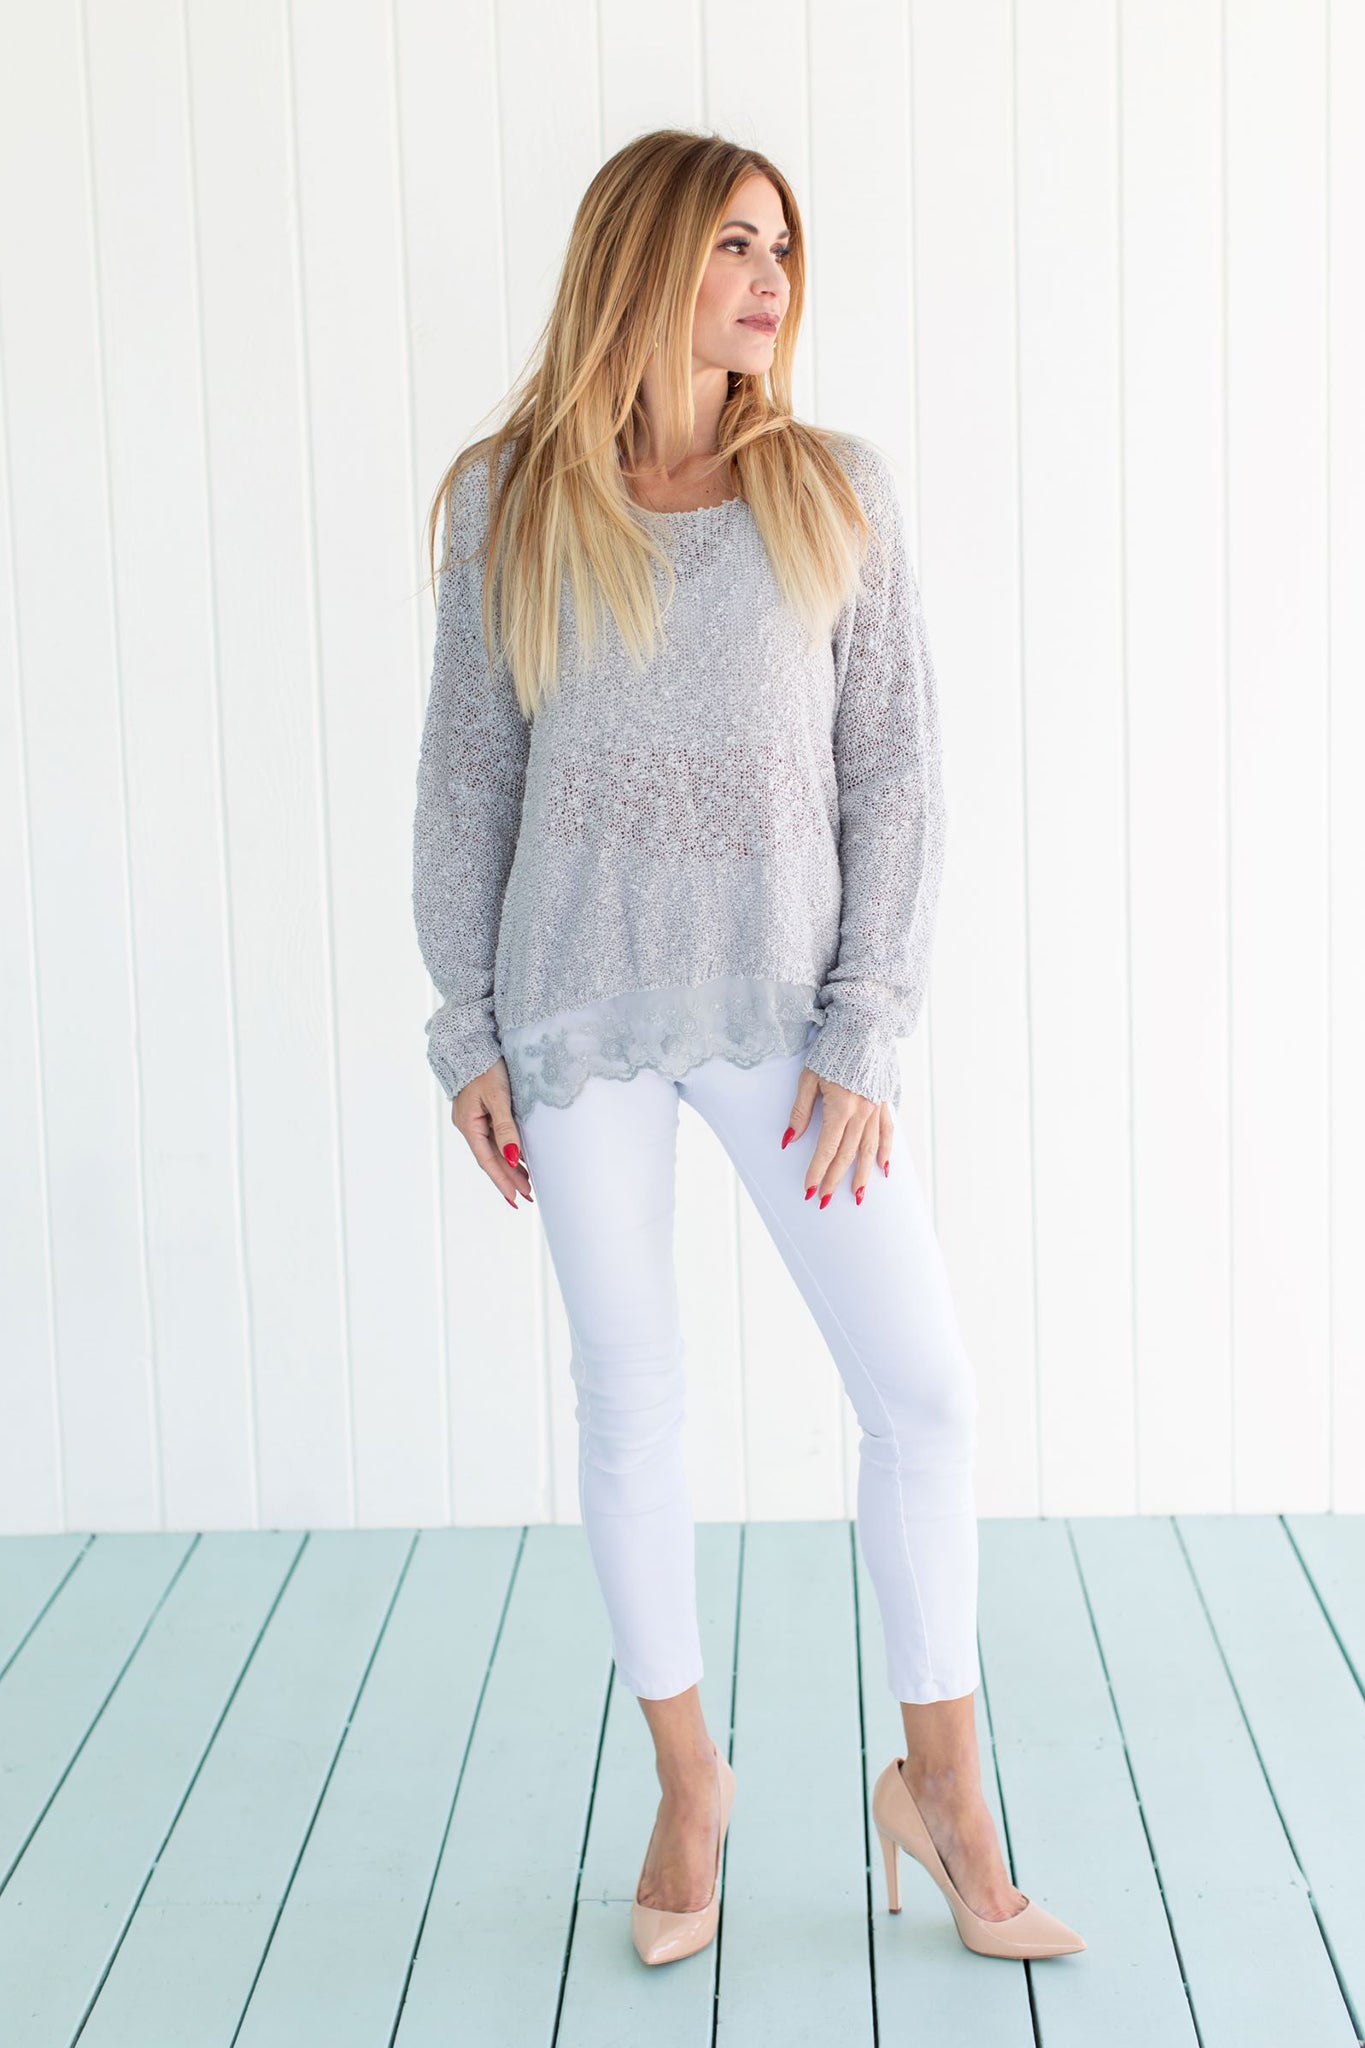 Lace Sweater Silver Tops jeanpierreklifa.com   